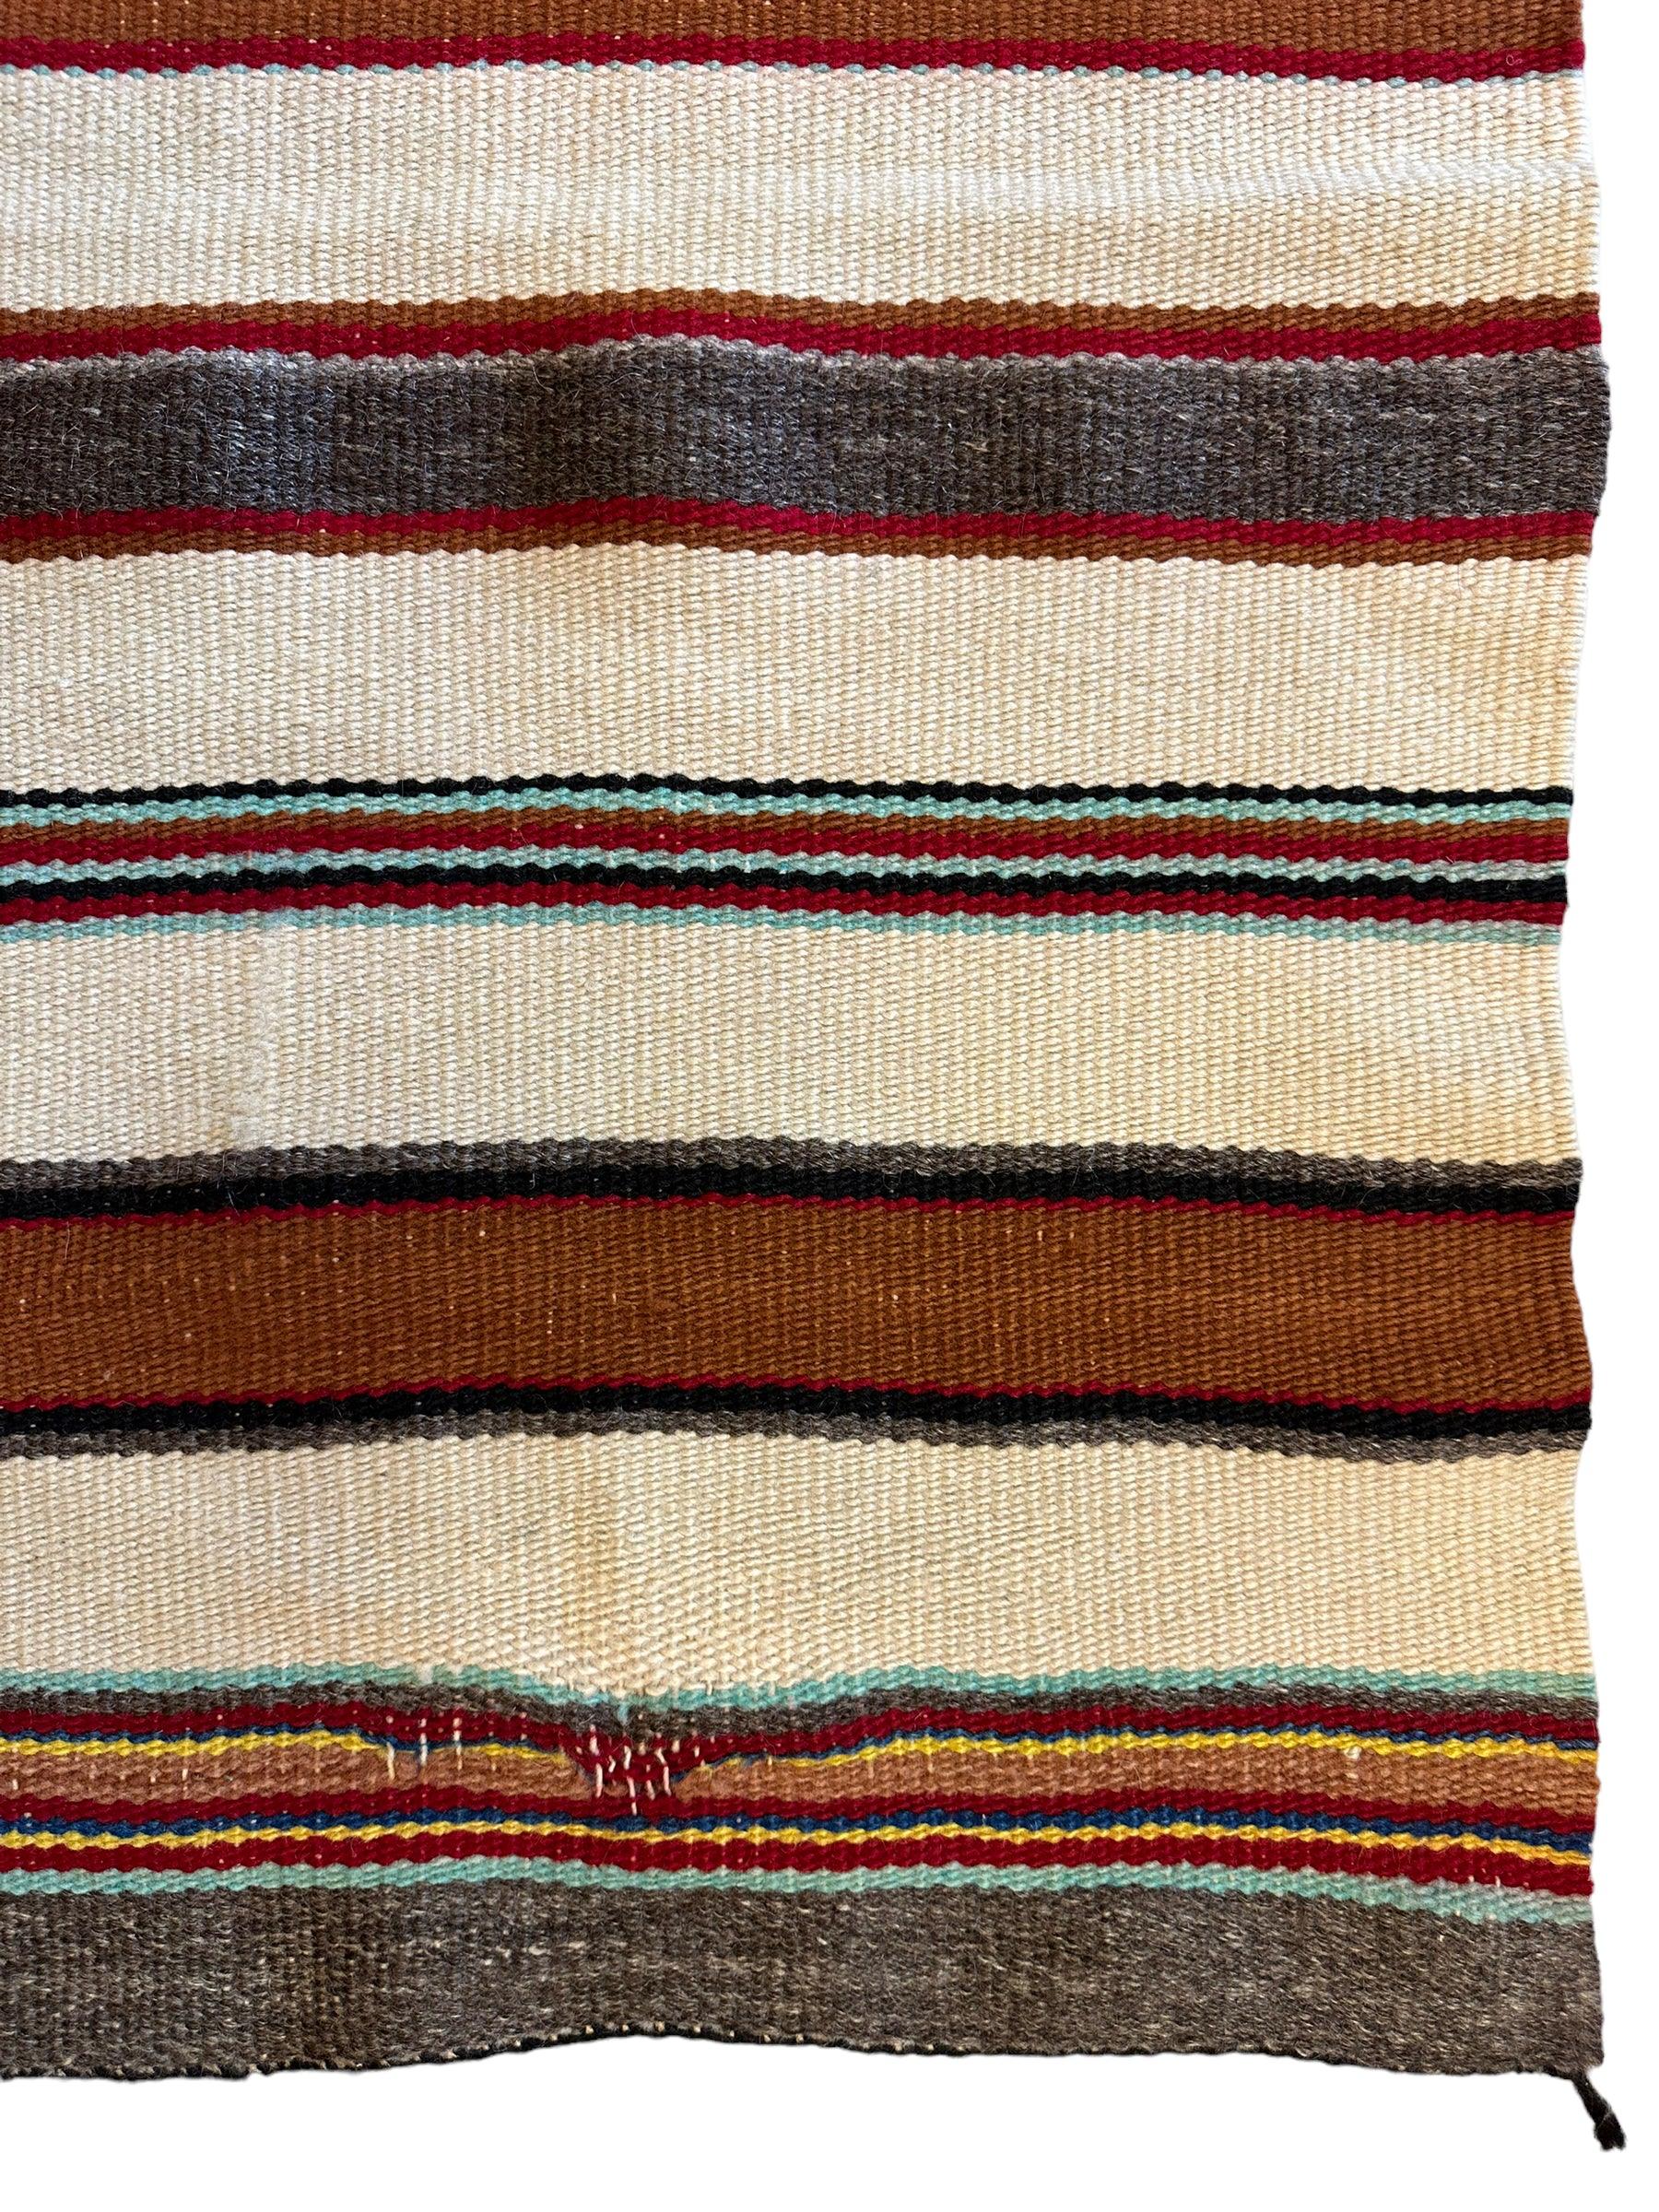 Vintage Native American Navajo Rug 30” x 63”